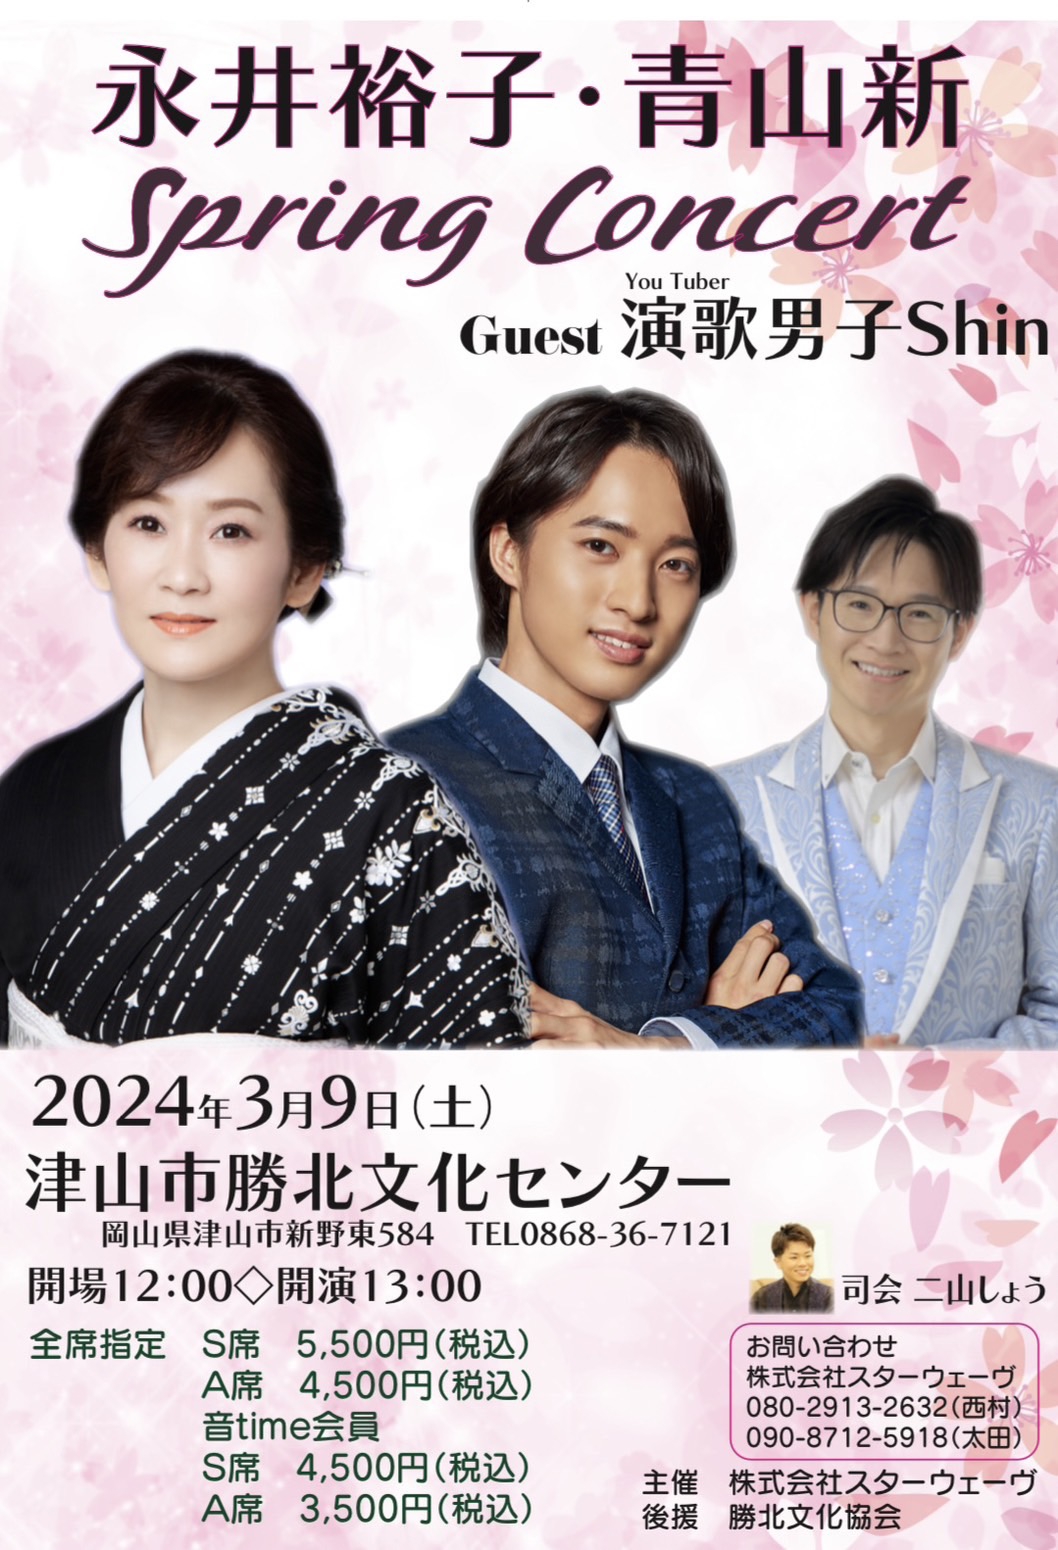 2024/3/9】「永井裕子・青山新 Spring Concert 」出演 | 青山新 オフィシャルサイト